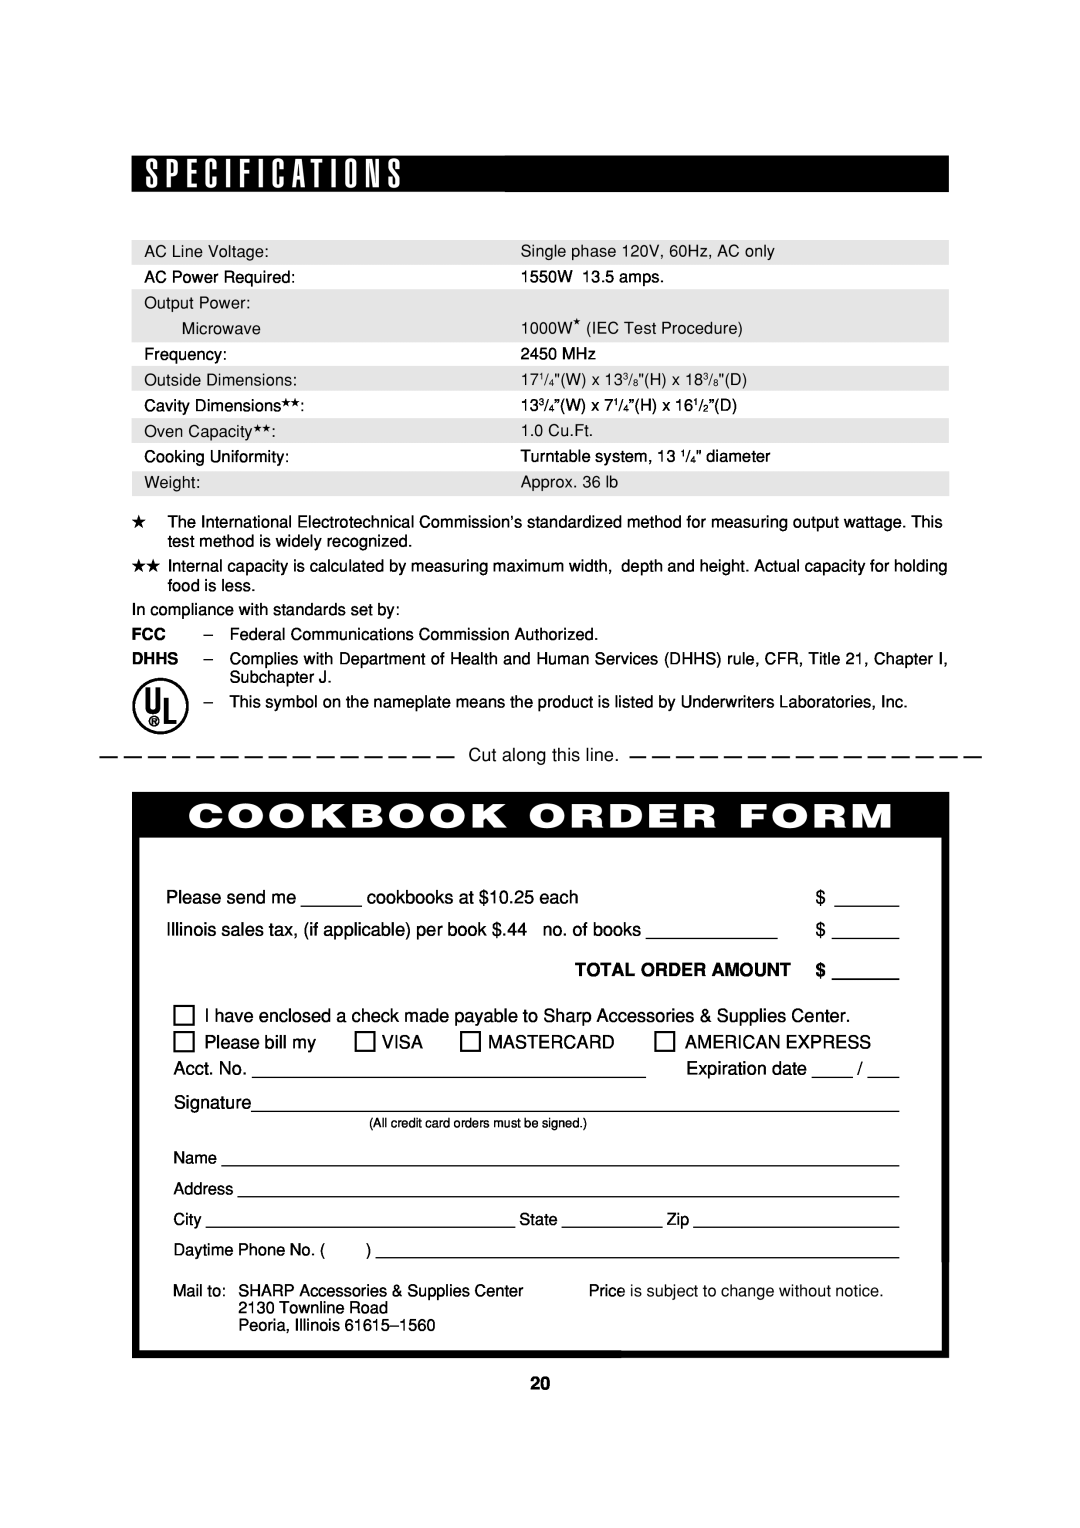 Sharp R-370E operation manual S P E C I F I C A T I O N S, Cookbook Order Form, Total Order Amount, $ 